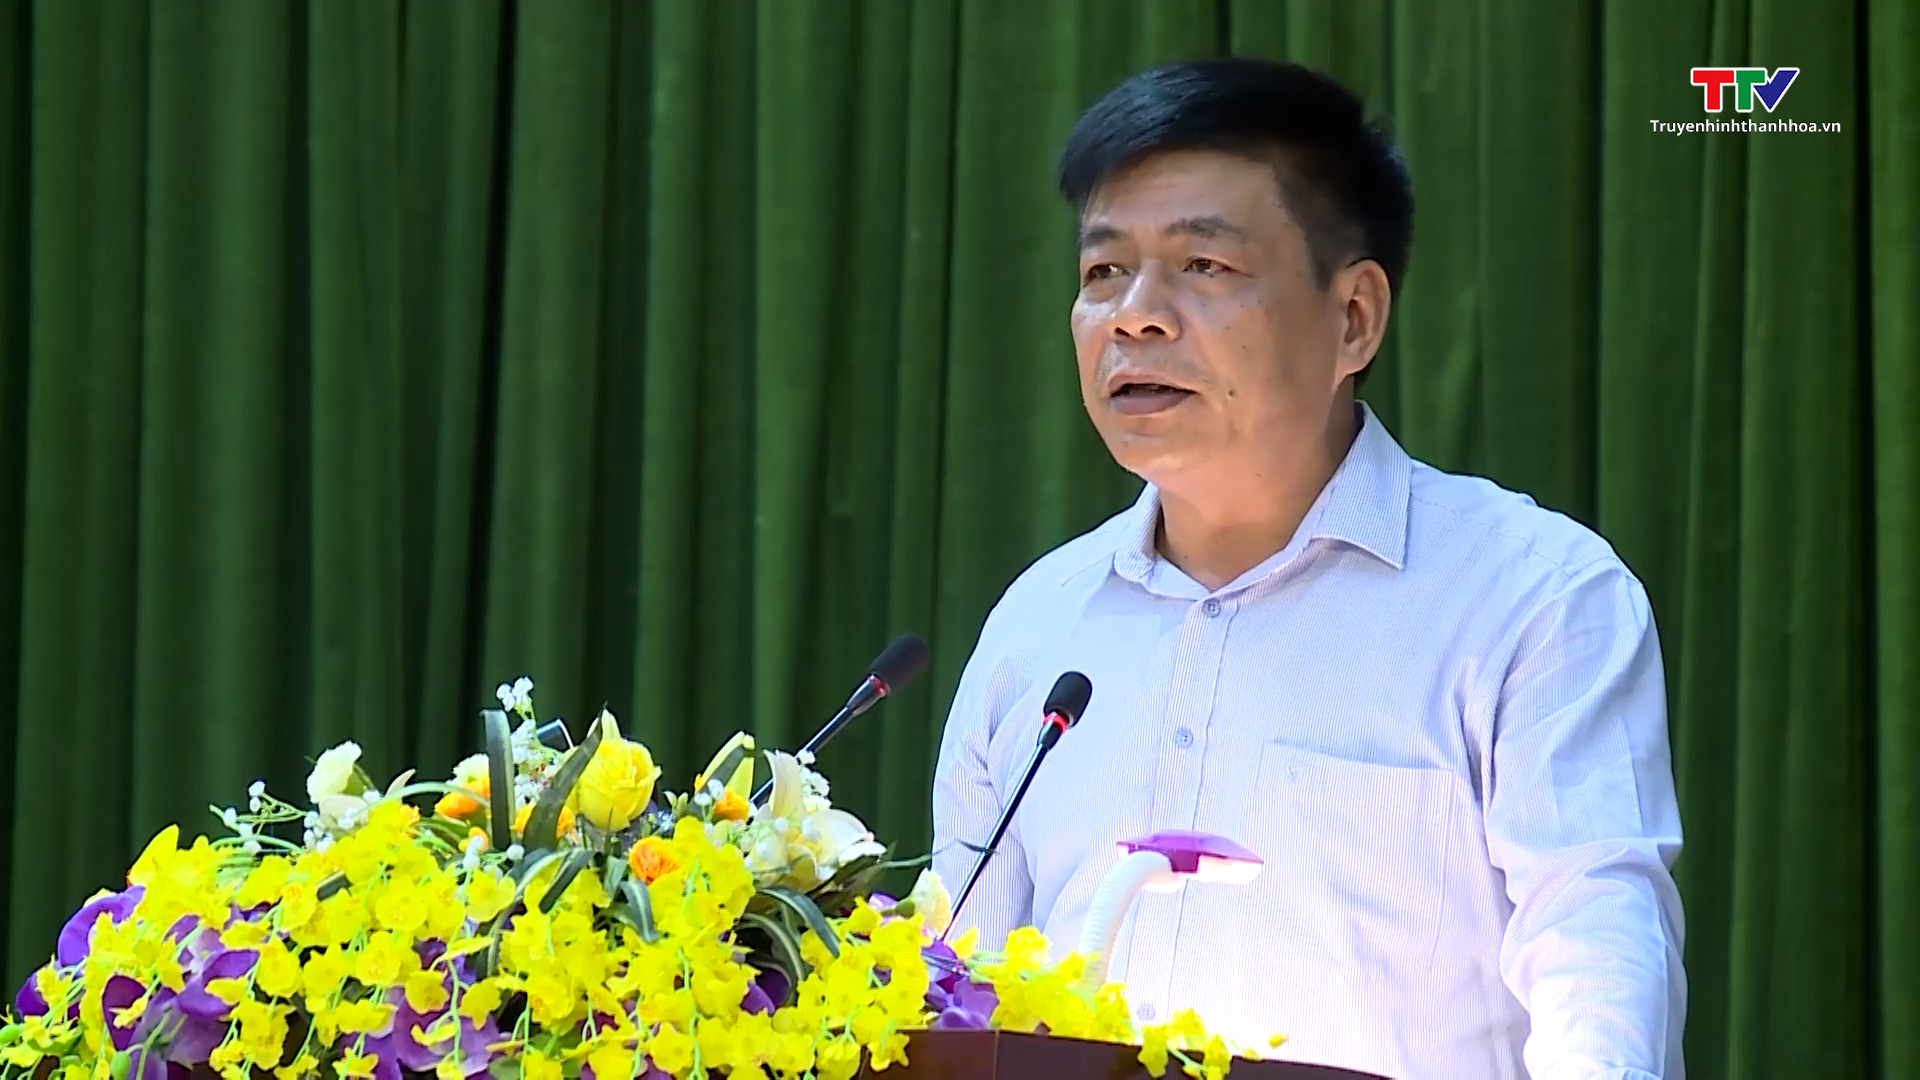 Đại tướng Lương Cường, Ủy viên Bộ Chính trị, Chủ nhiệm Tổng cục Chính trị Quân đội Nhân dân Việt Nam tiếp xúc cử tri tại Thanh Hóa - Ảnh 3.